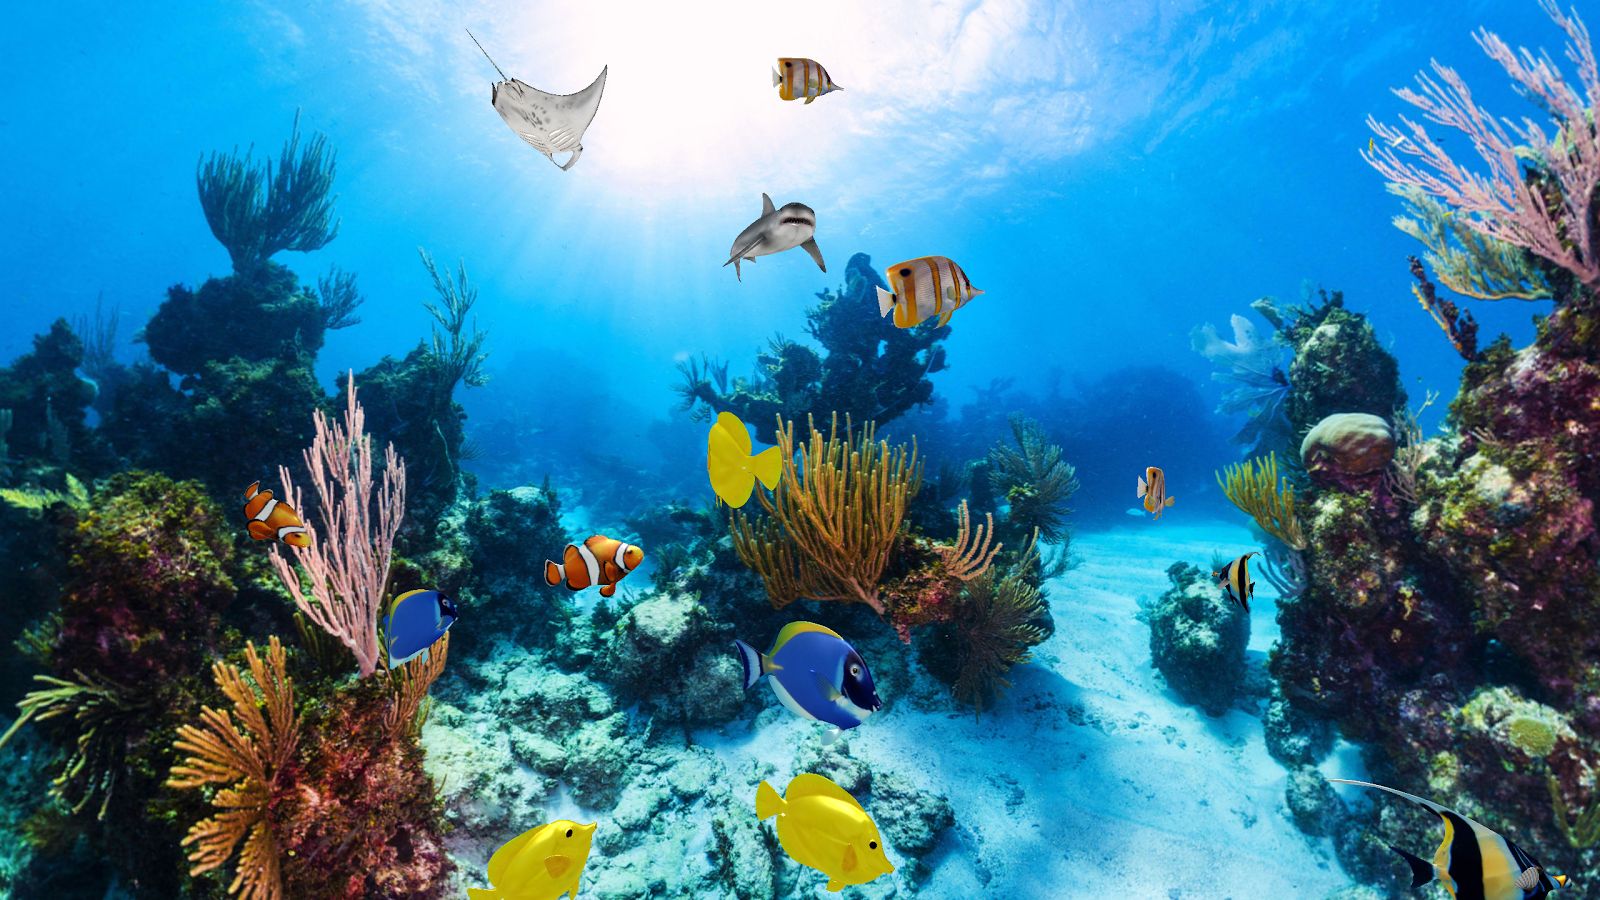 tapeten 360,korallenriff,unter wasser,meeresbiologie,riff,korallenrifffische